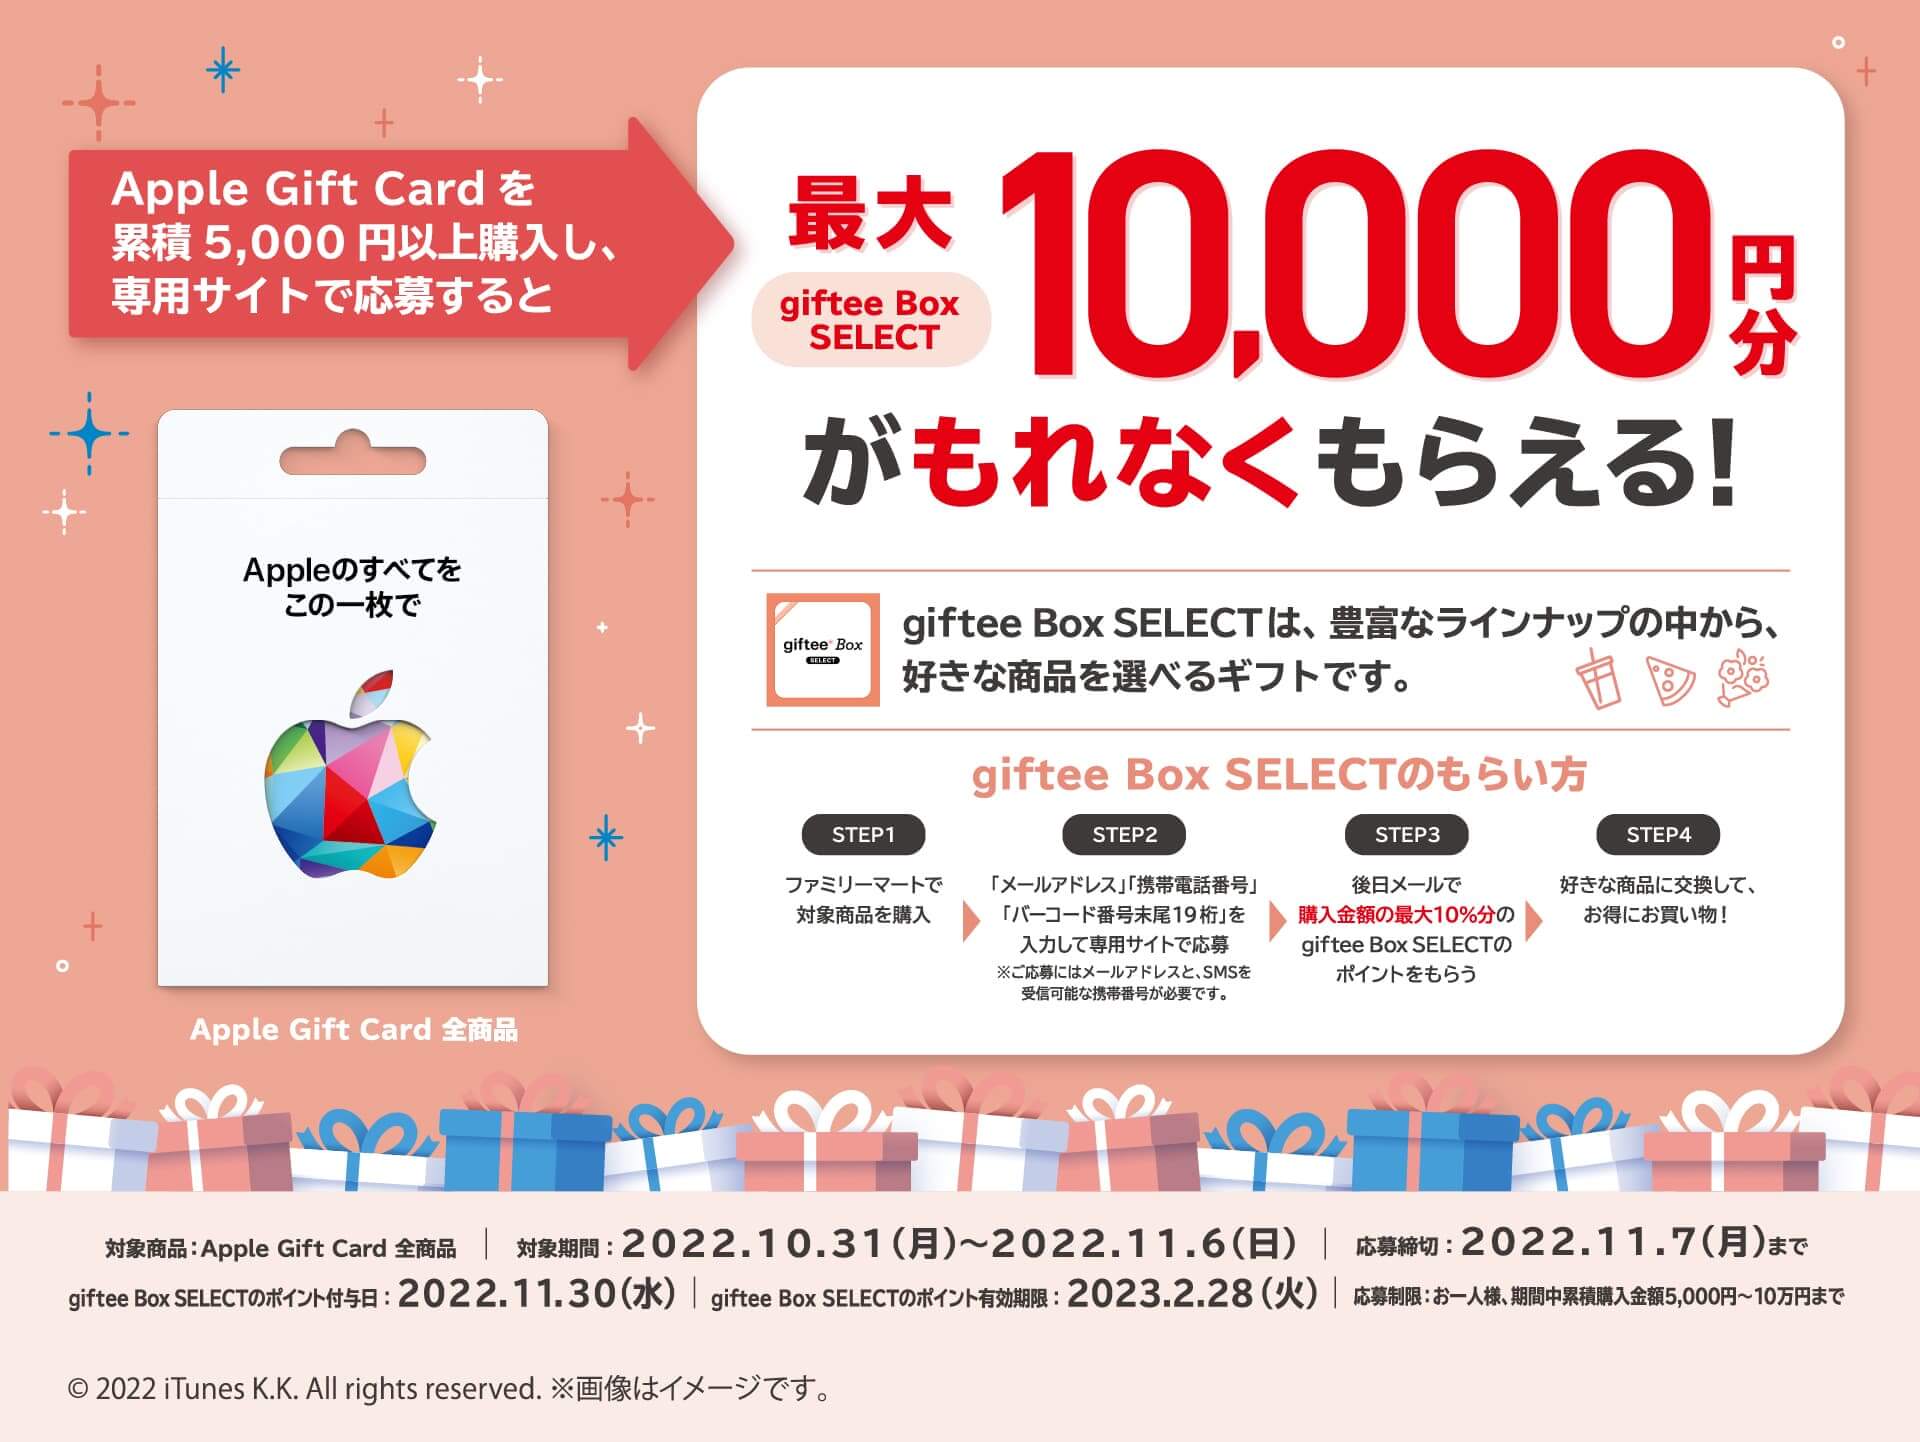 ファミリーマート Apple Gift Card キャンペーン